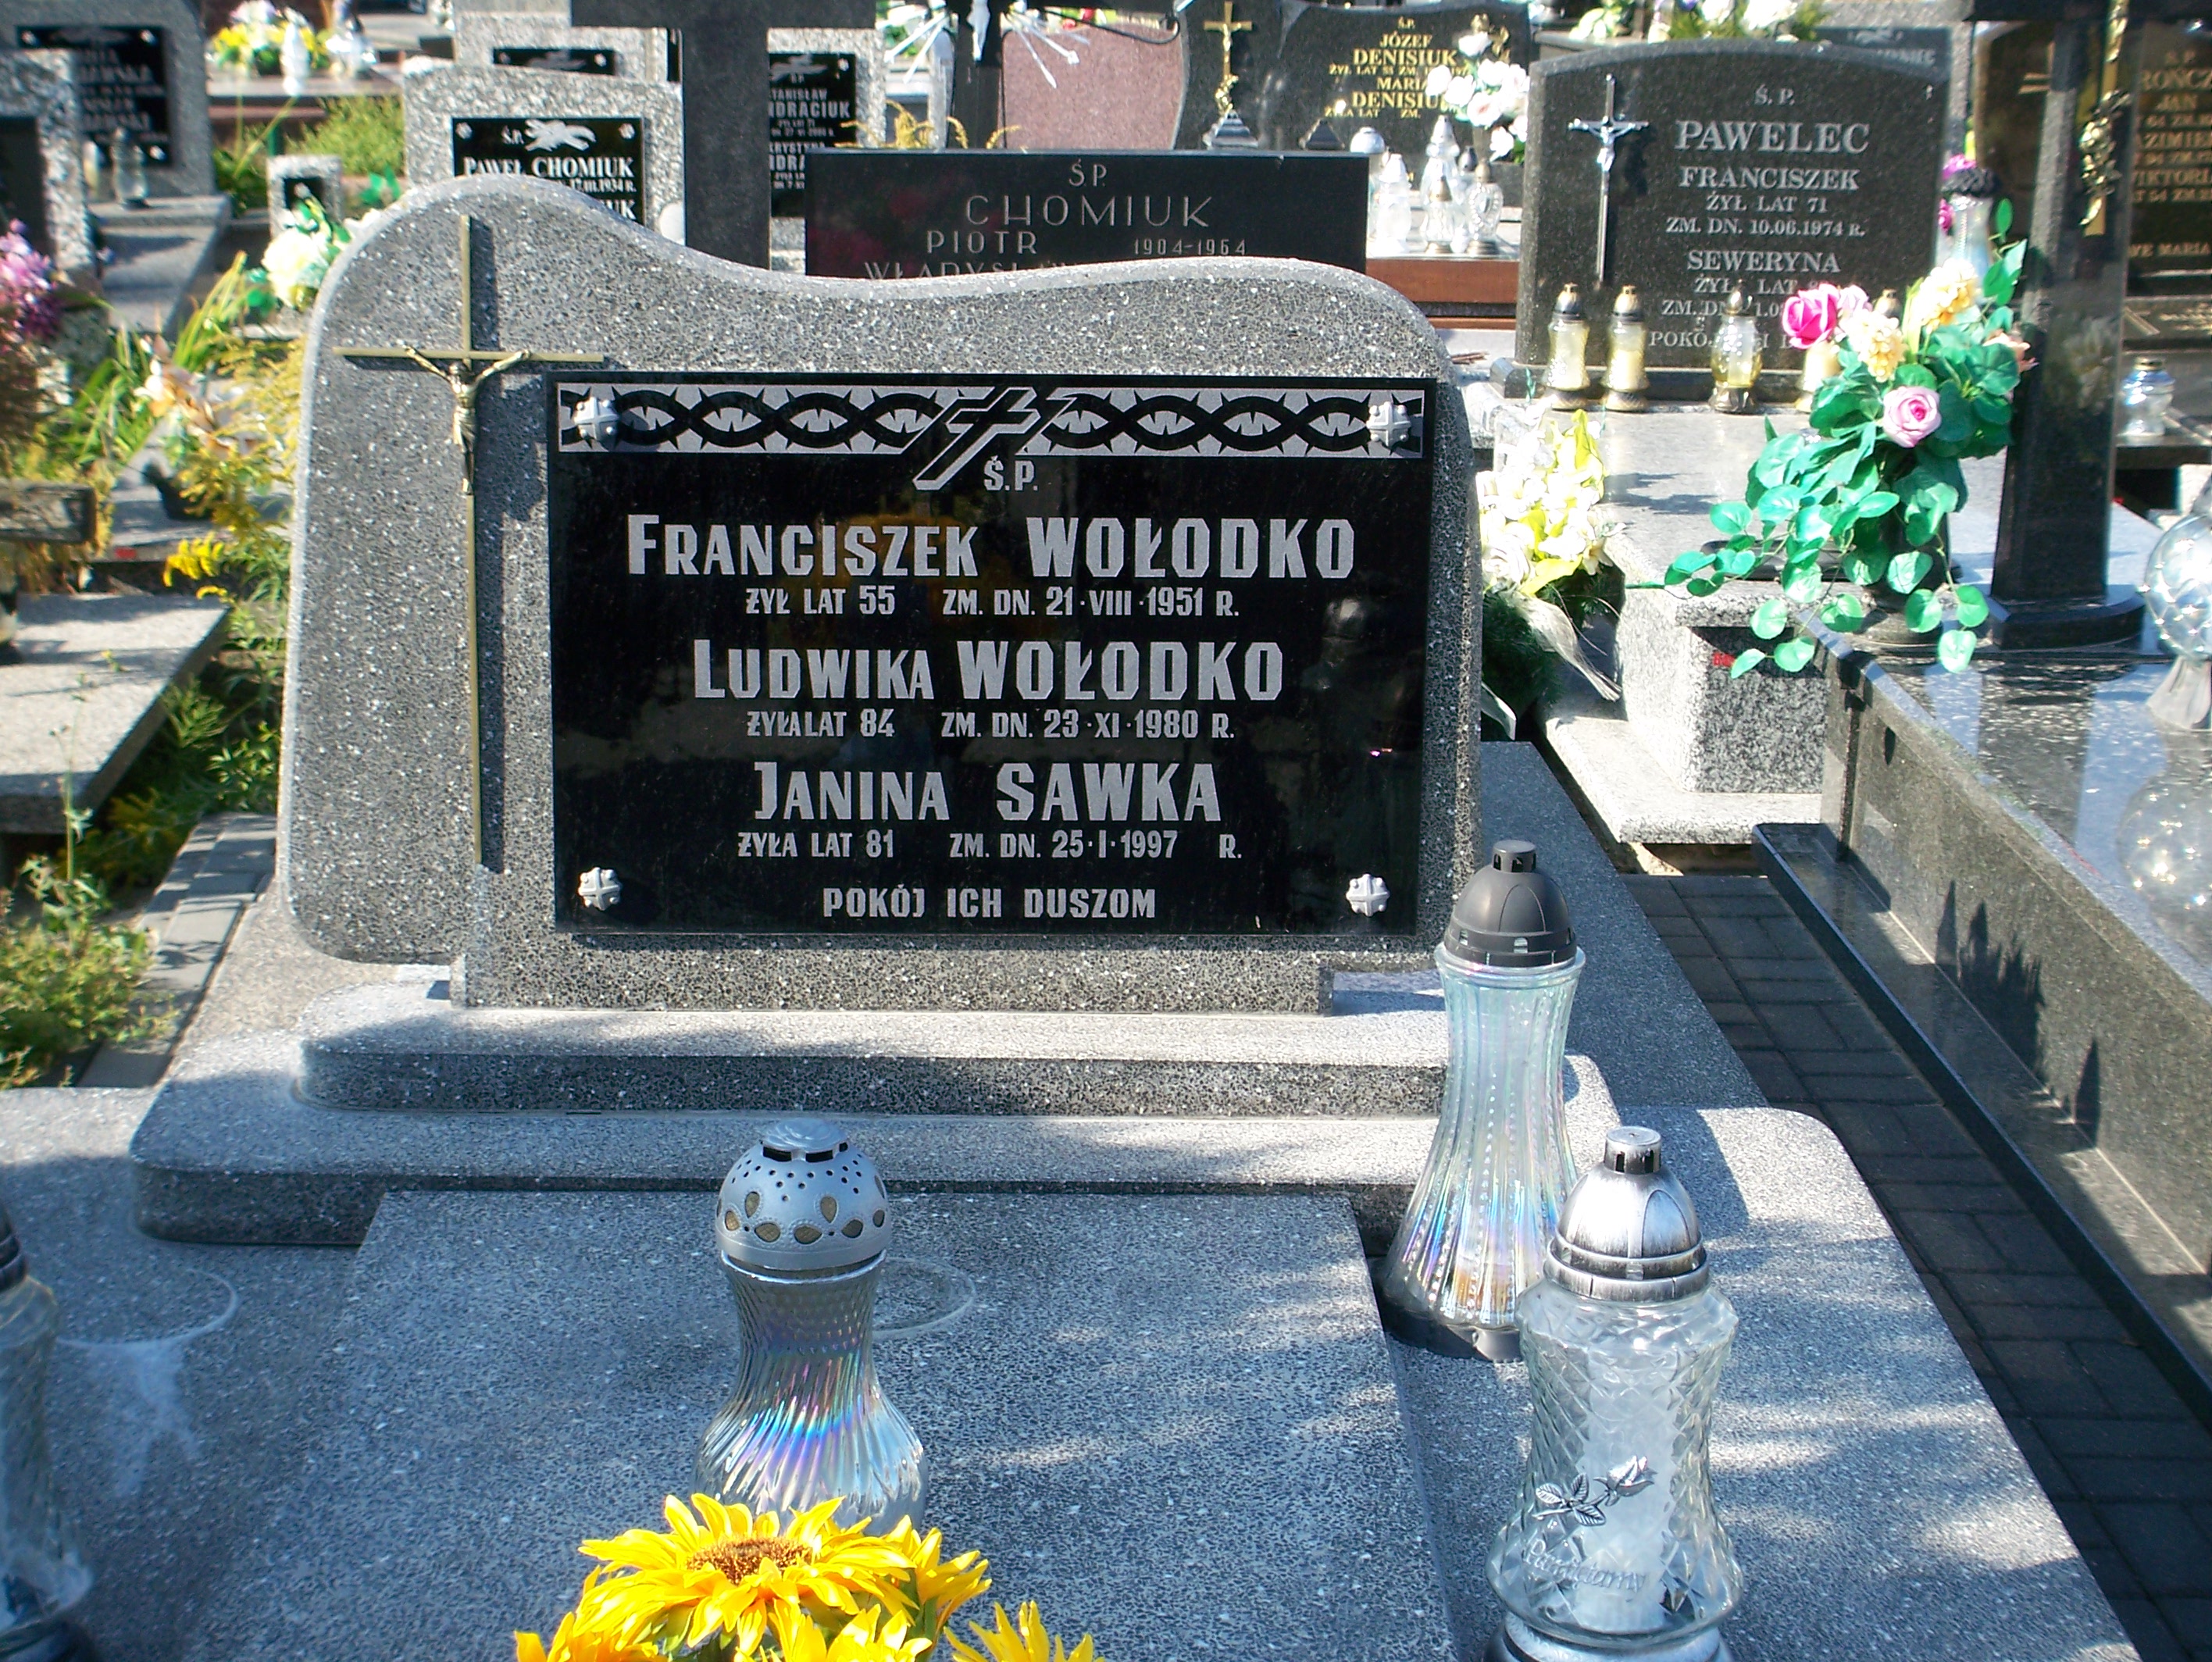 Zdjęcie grobu Franciszek Wołodko